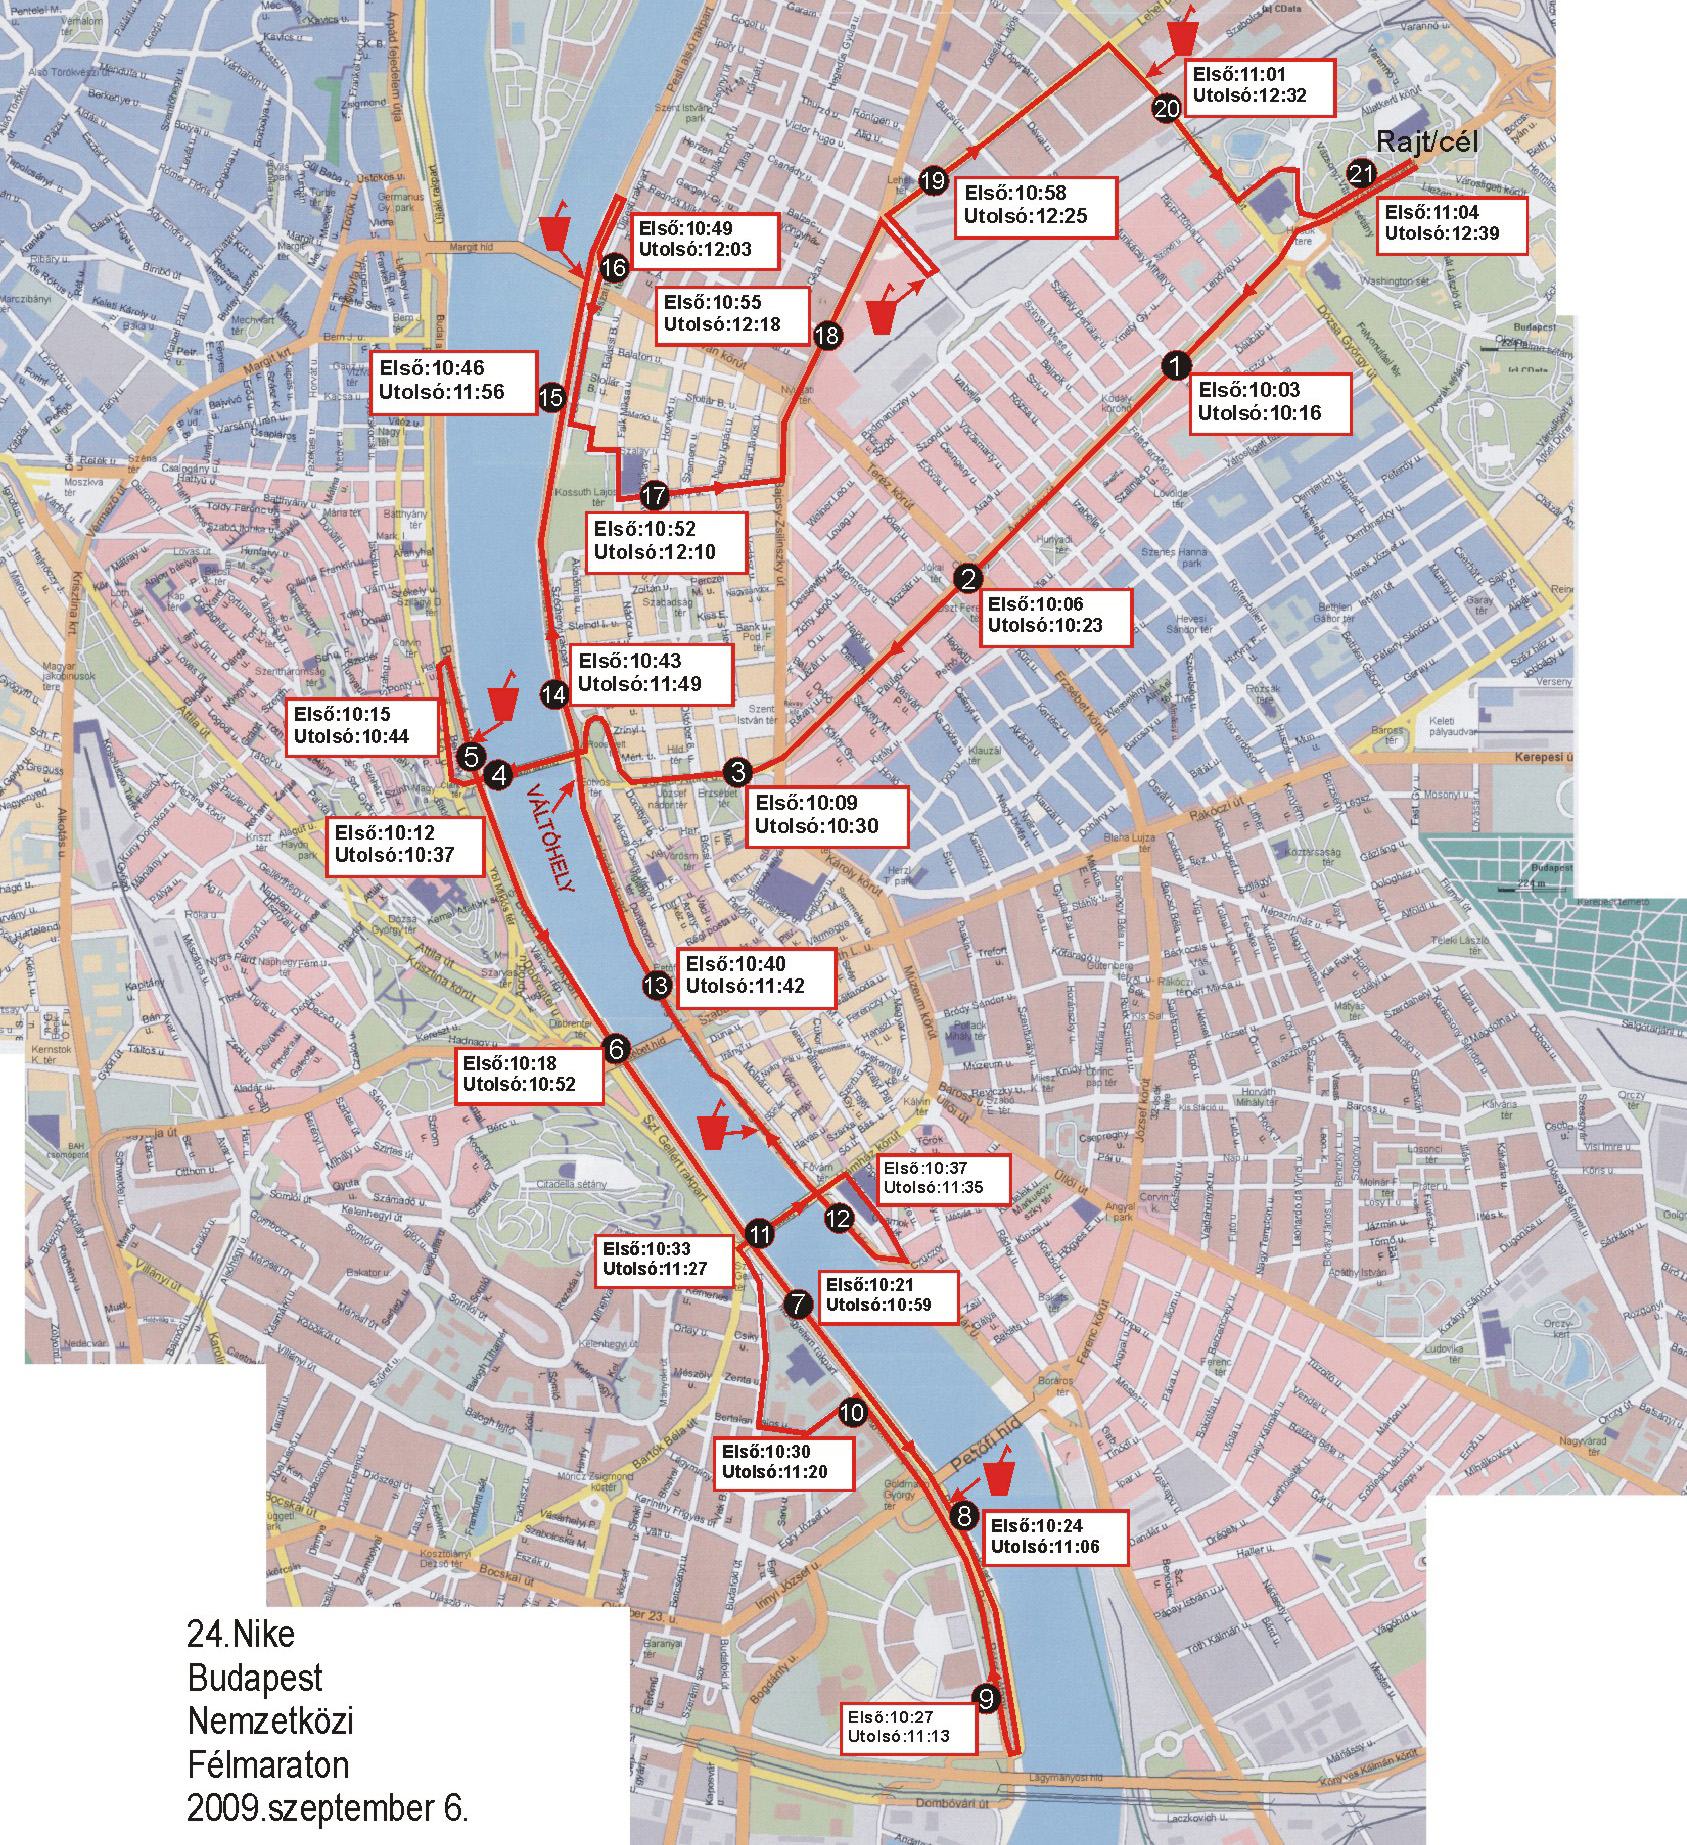 nyomtatható budapest térkép 24. Budapest Nemzetközi Félmaraton, Térkép   Futanet.hu nyomtatható budapest térkép